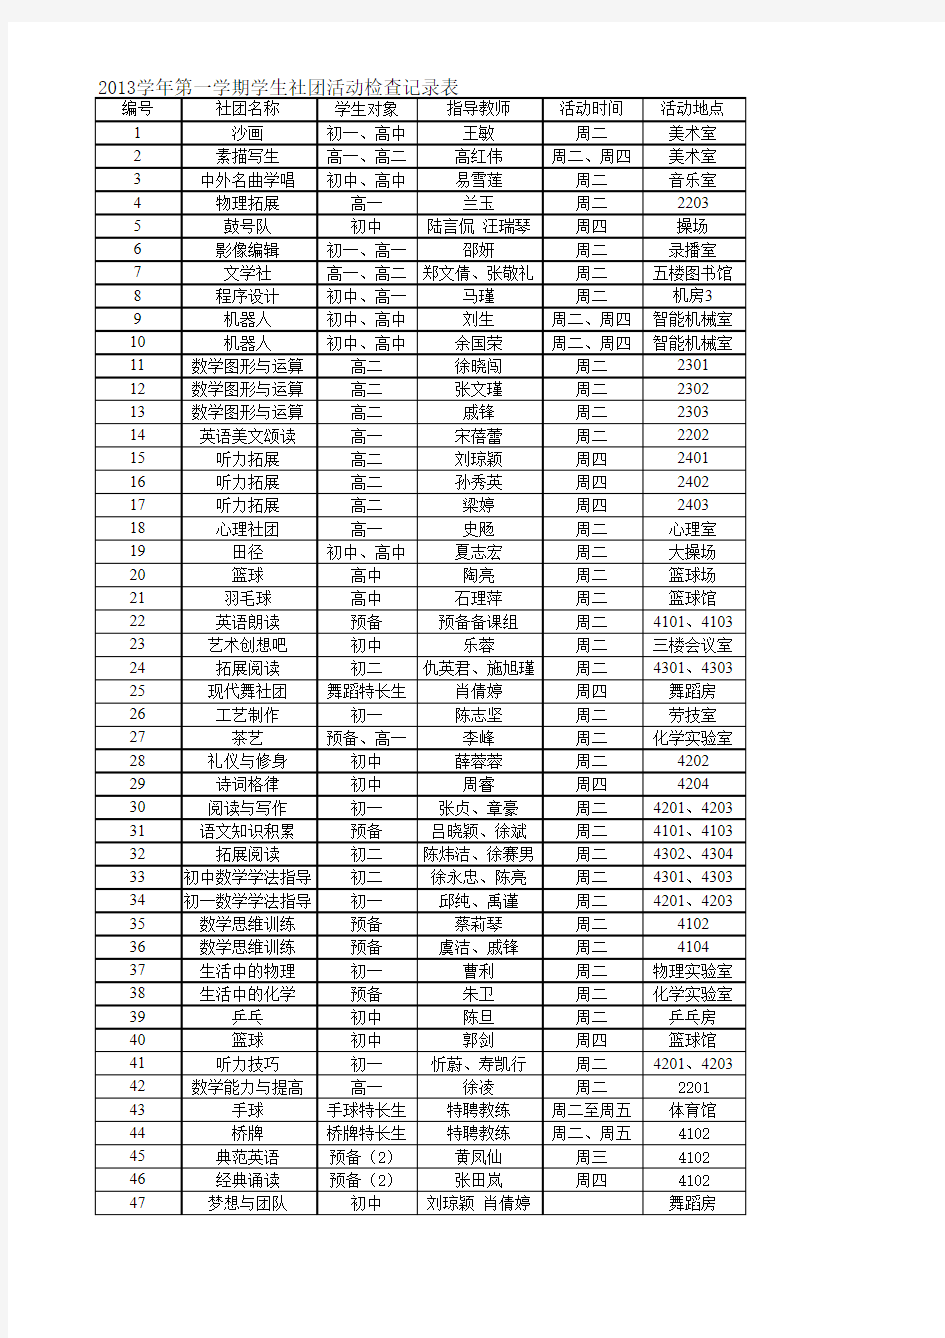 学生社团检查记录表(123)2013.9